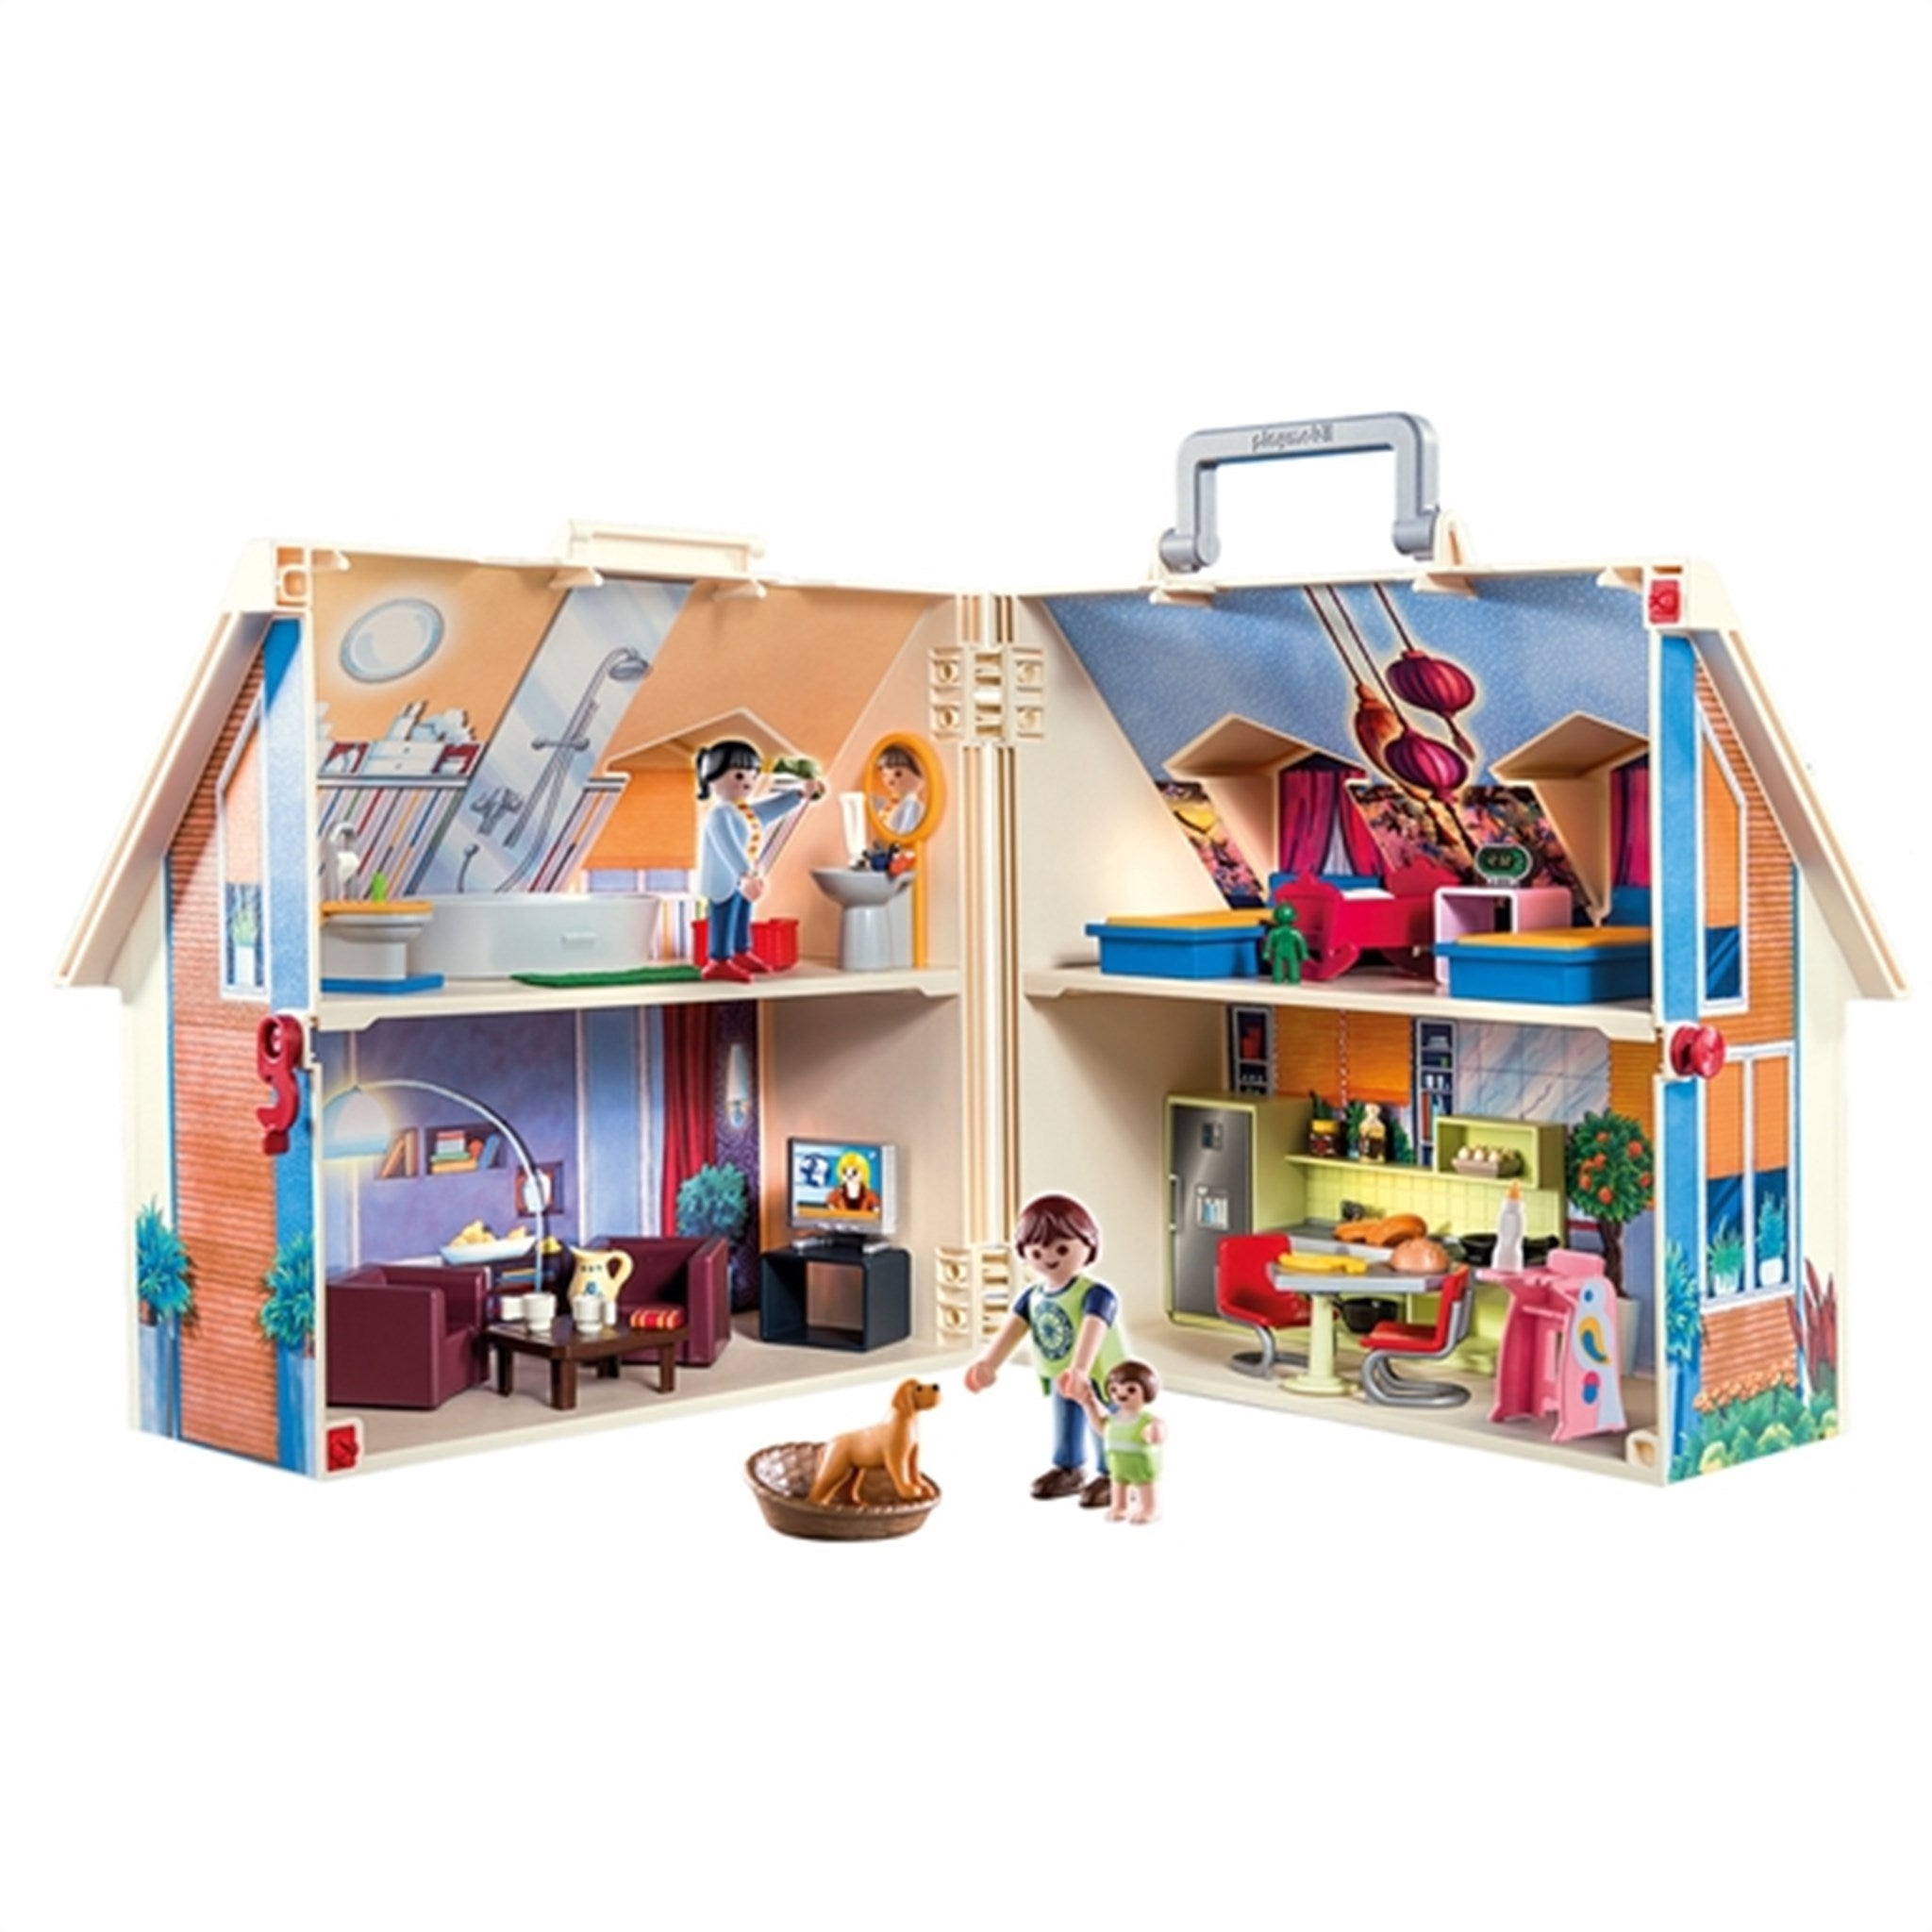 Playmobil® Dollhouse - Take Along Dollhouse 5